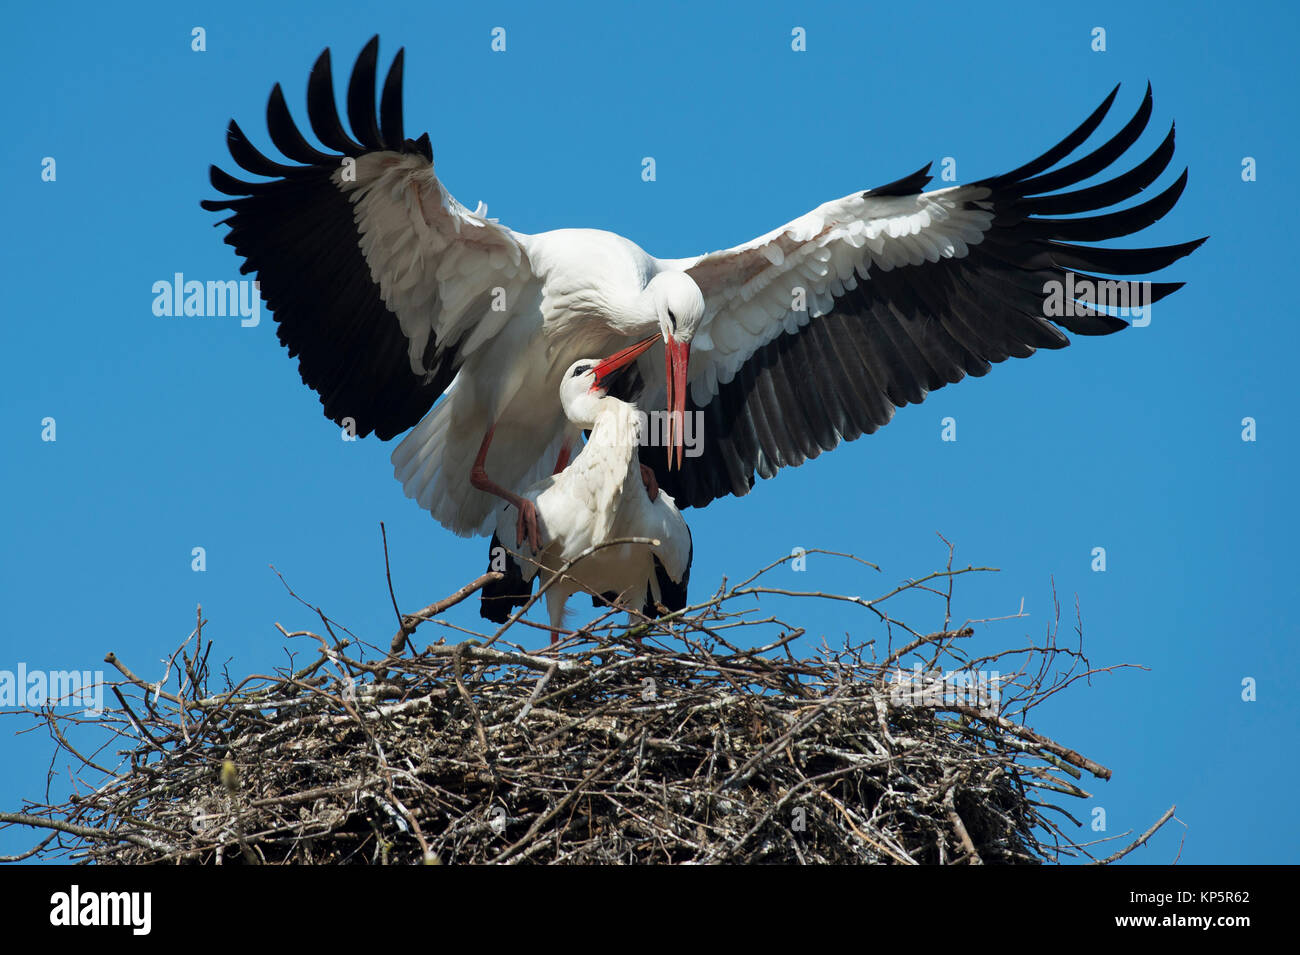 Weissstoerche bei Paarung, White storks mateing Stock Photo